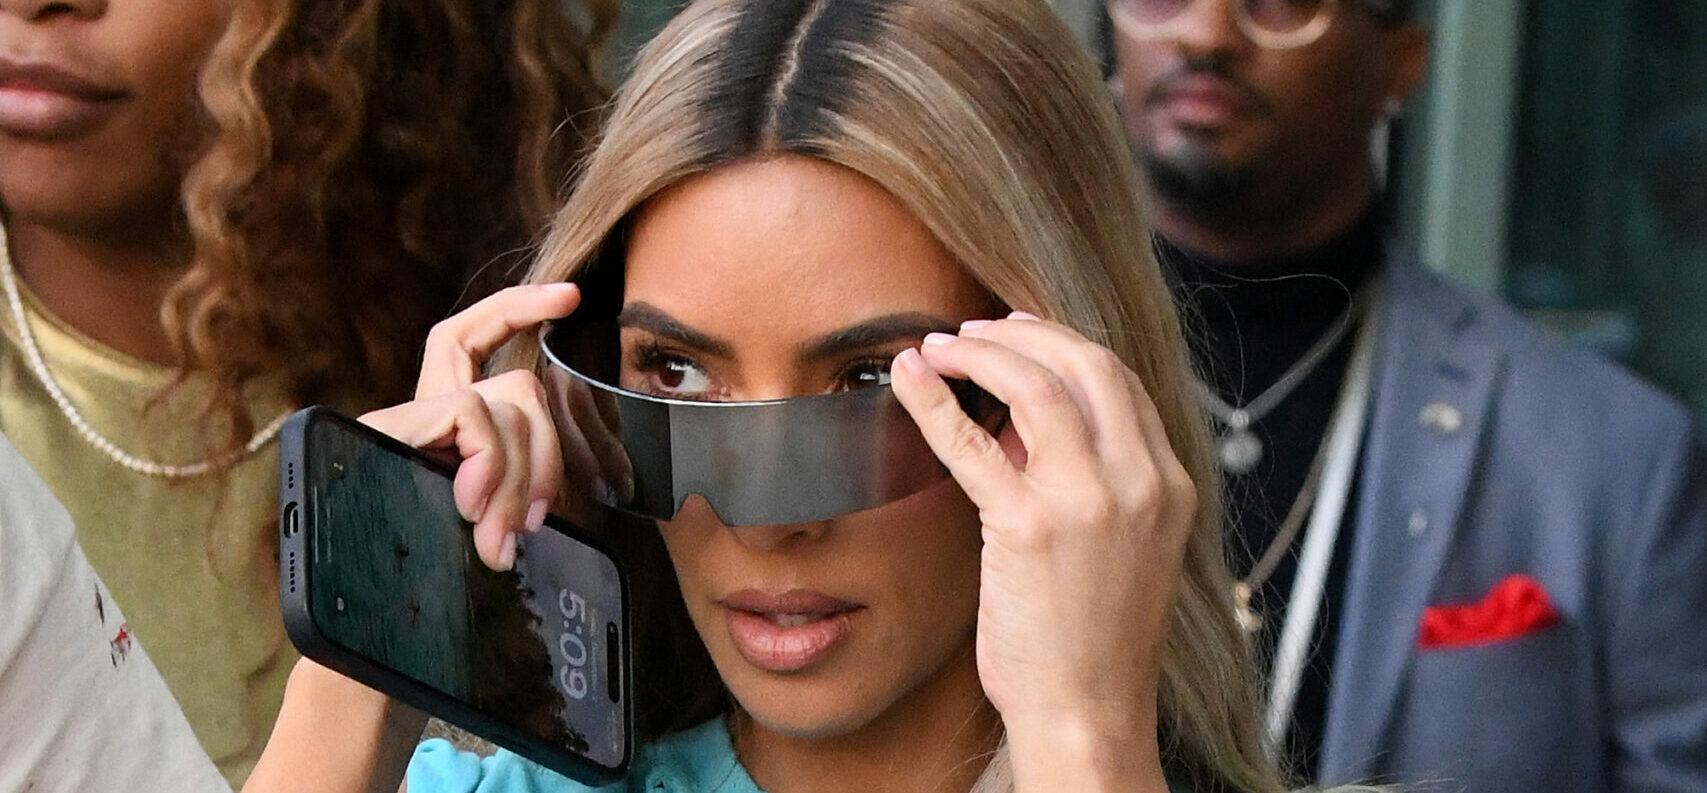 Kim Kardashian hits up Art Basel Miami Beach with sister Khloe and pals Serena Williams and Foodgod